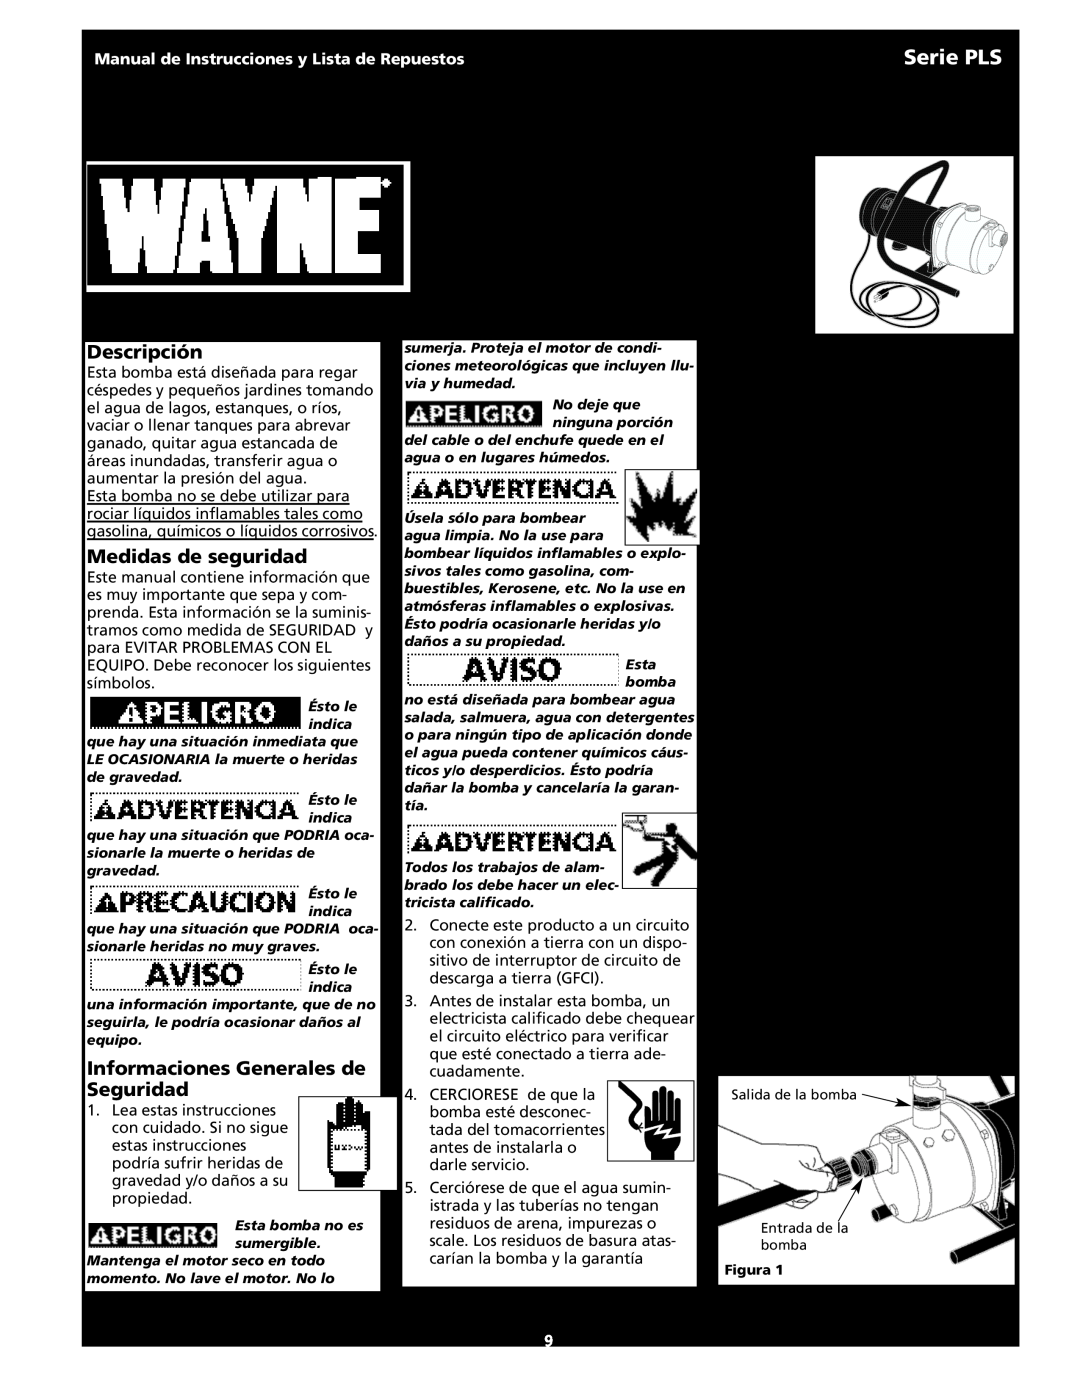 Wayne 321602-001 Serie PLS XXXXX, XXXXX and, Descripción, Instalación, Medidas de seguridad, Informaciones Generales de 